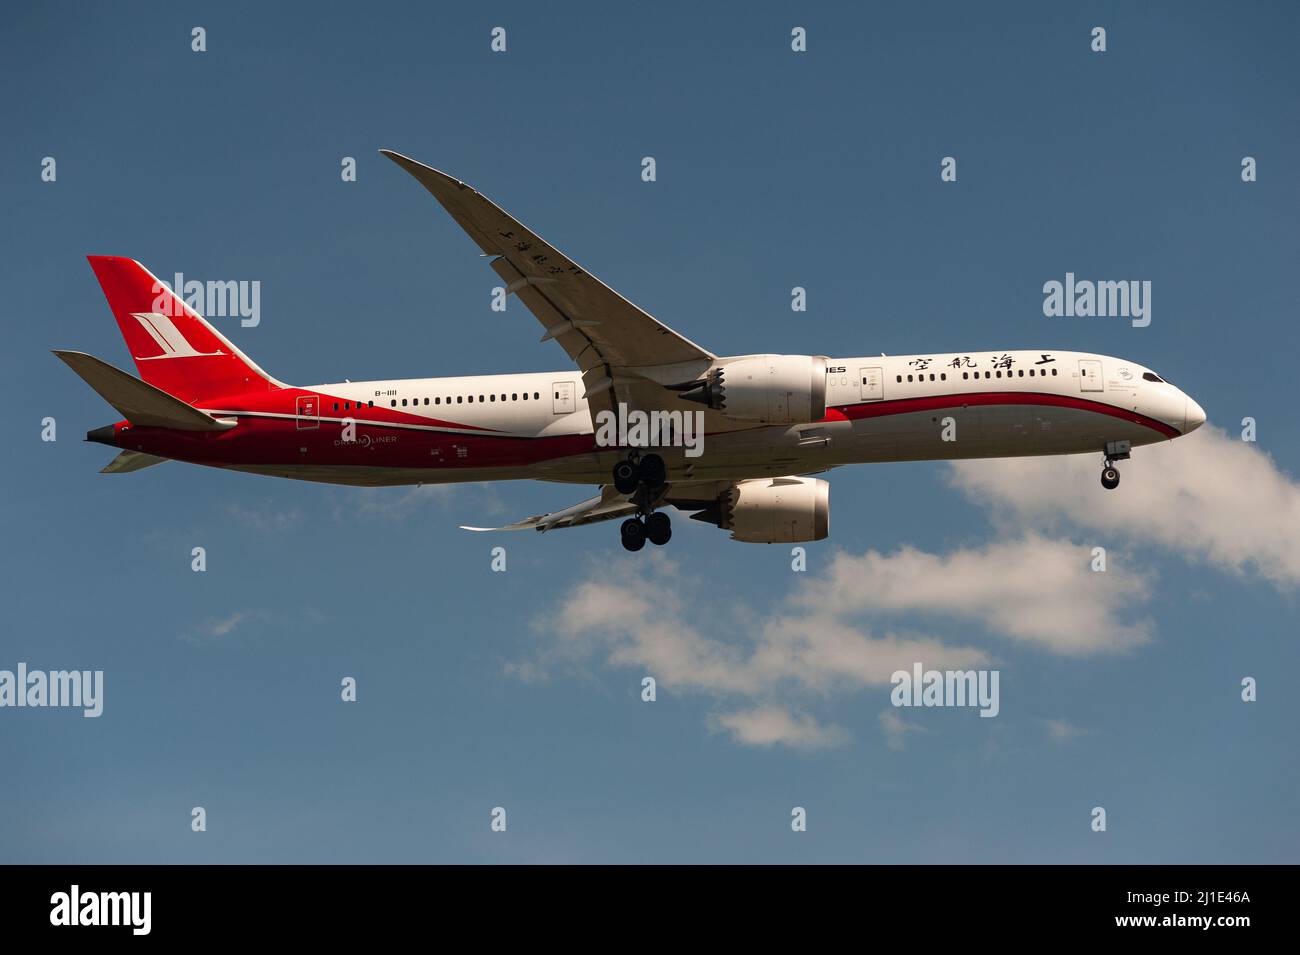 29.11.2021, Singapour, , Singapour - Un avion passager de la China Shanghai Airlines de type Boeing 787-9 Dreamliner avec enregistrement B-1111 sur APP Banque D'Images